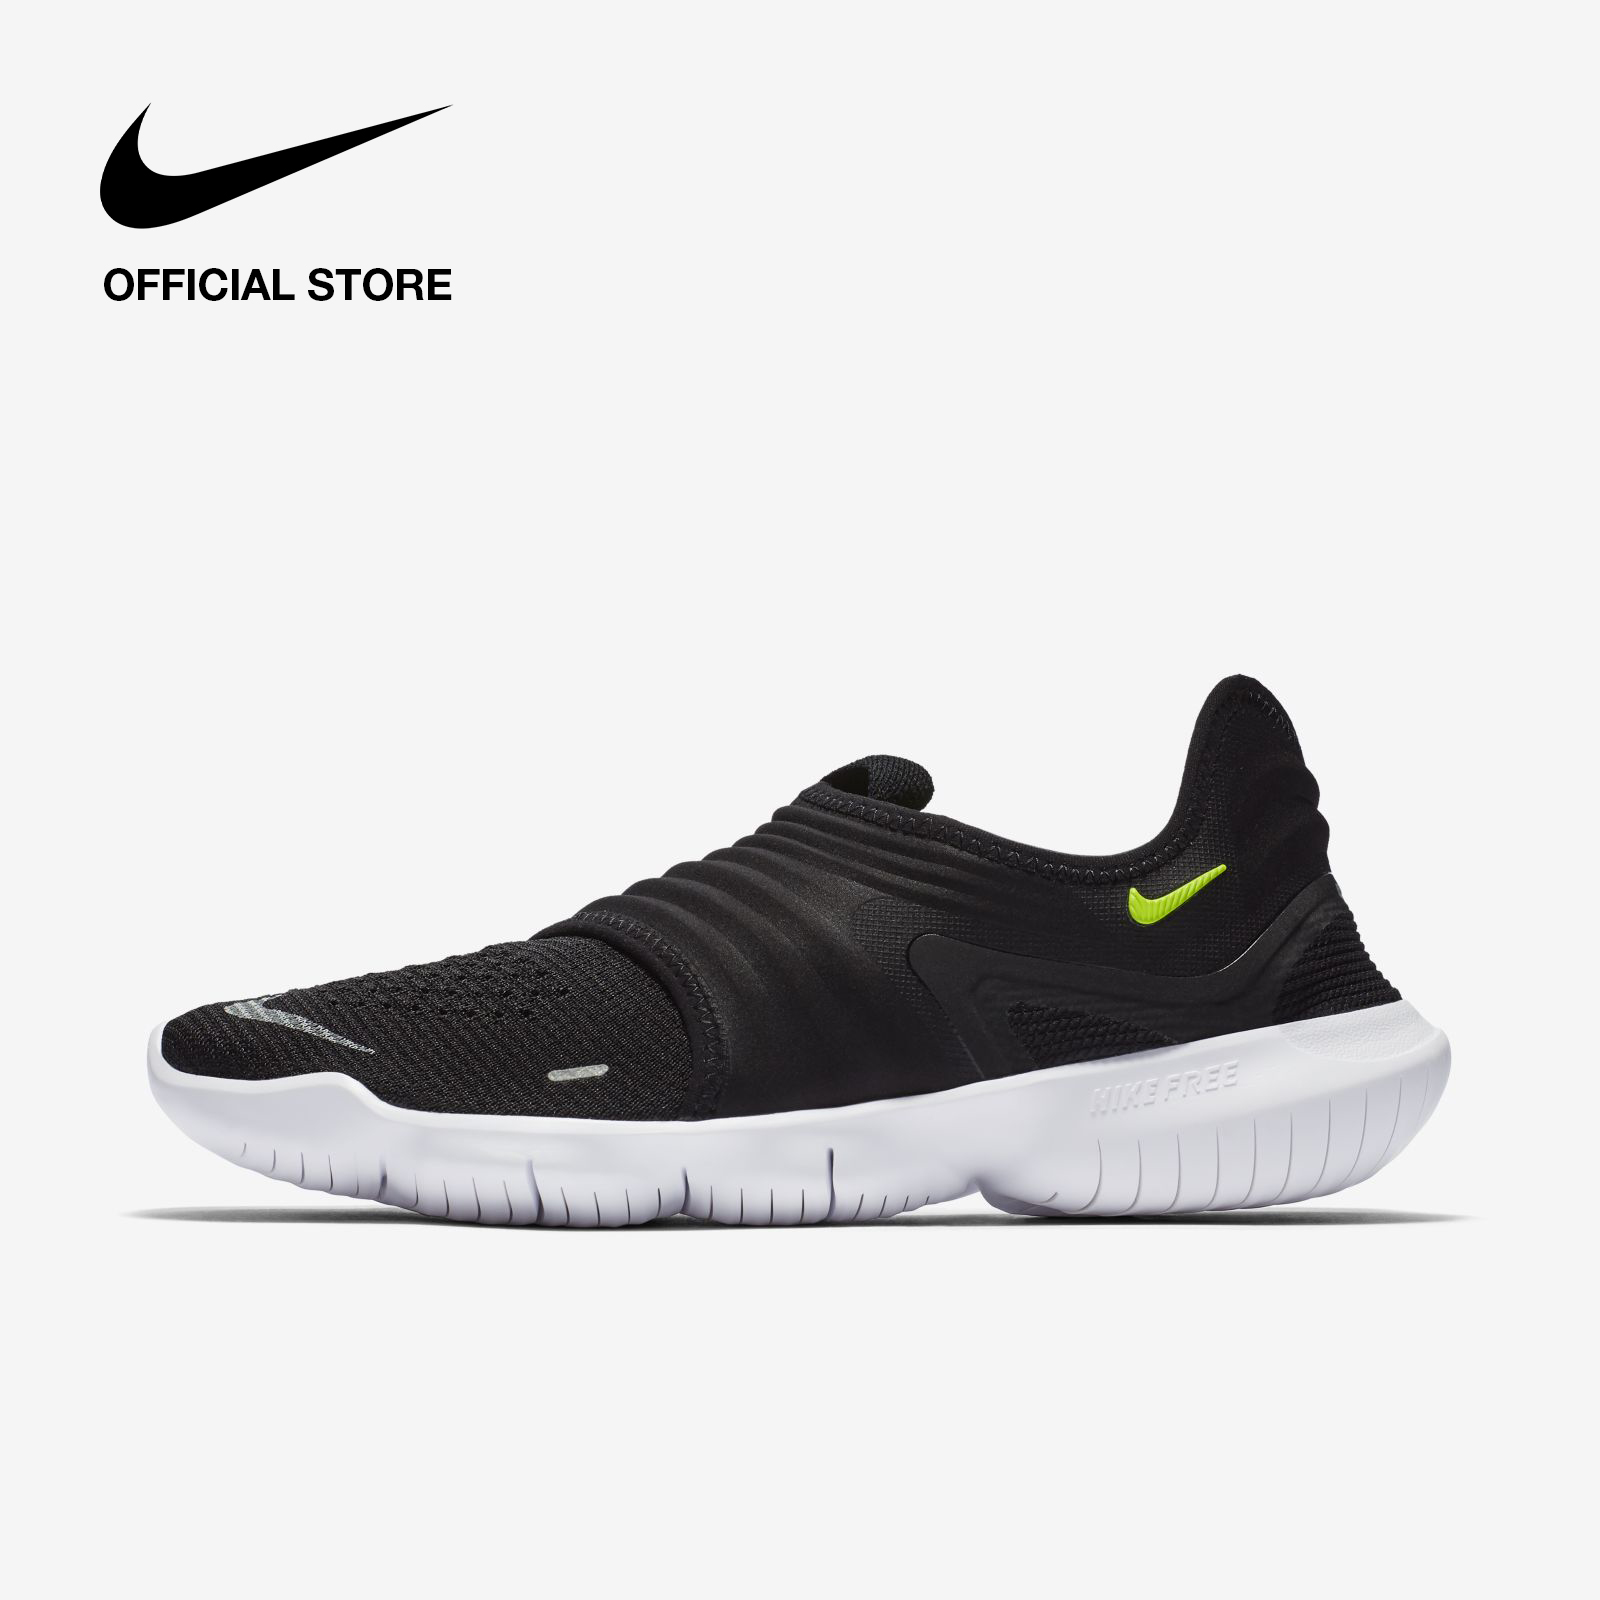 Nike Men's Free RN Flyknit 3 Running Shoes - Black ไนกี้ รองเท้าวิ่งผู้ชาย ฟรี อาร์เอ็น ฟลายนิท 3 - สีดำ